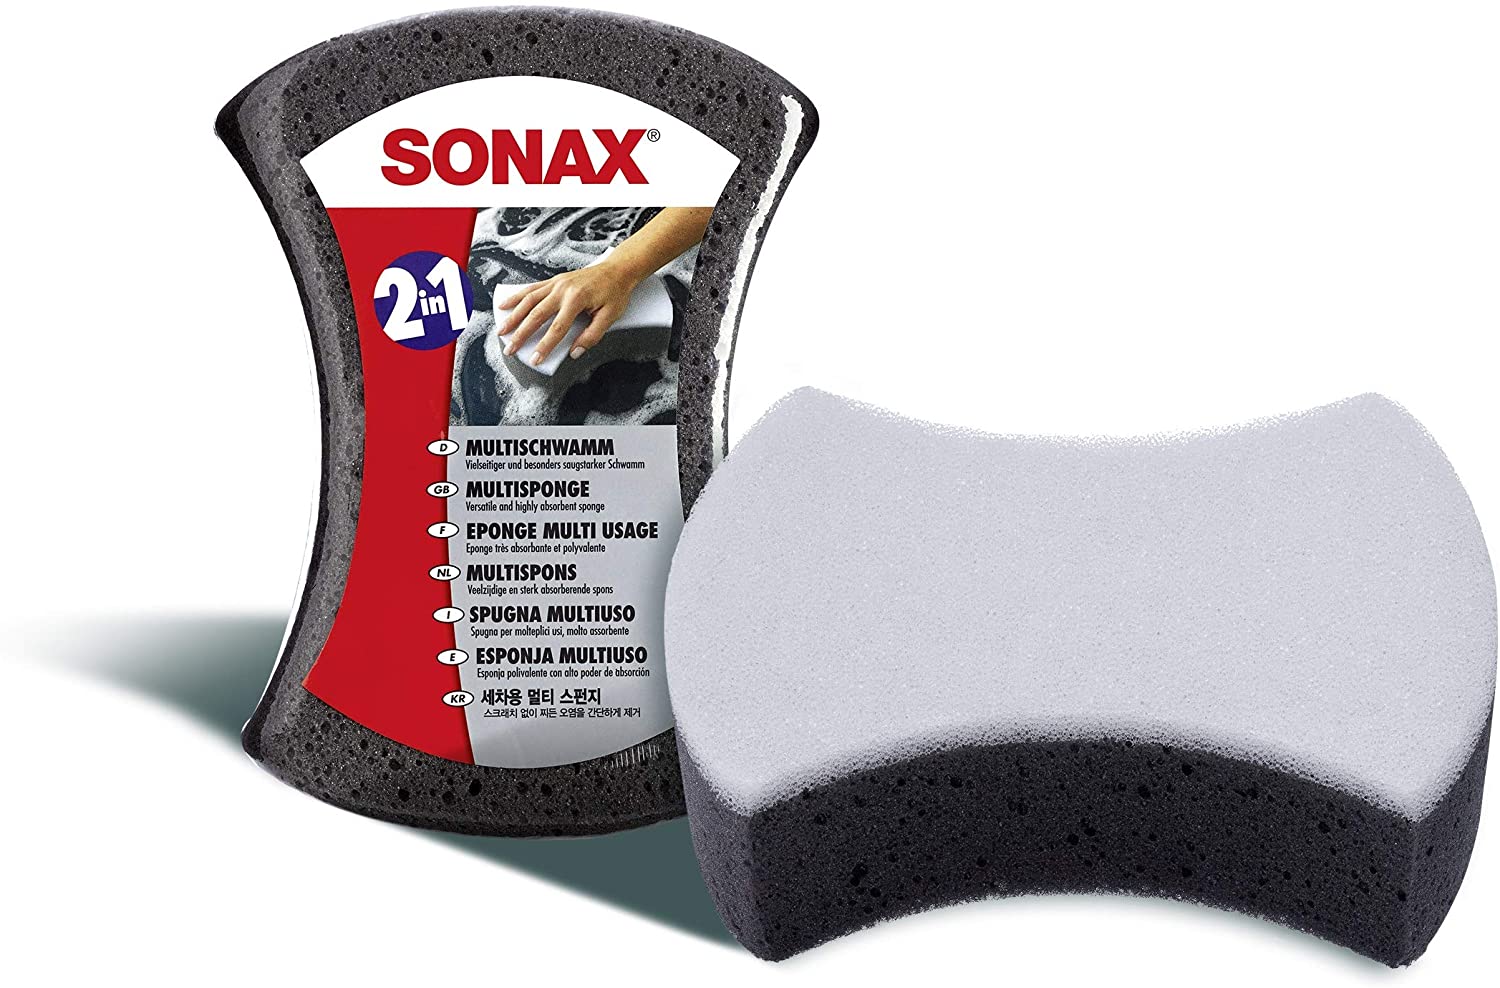 Sonax Multischwamm 2in1